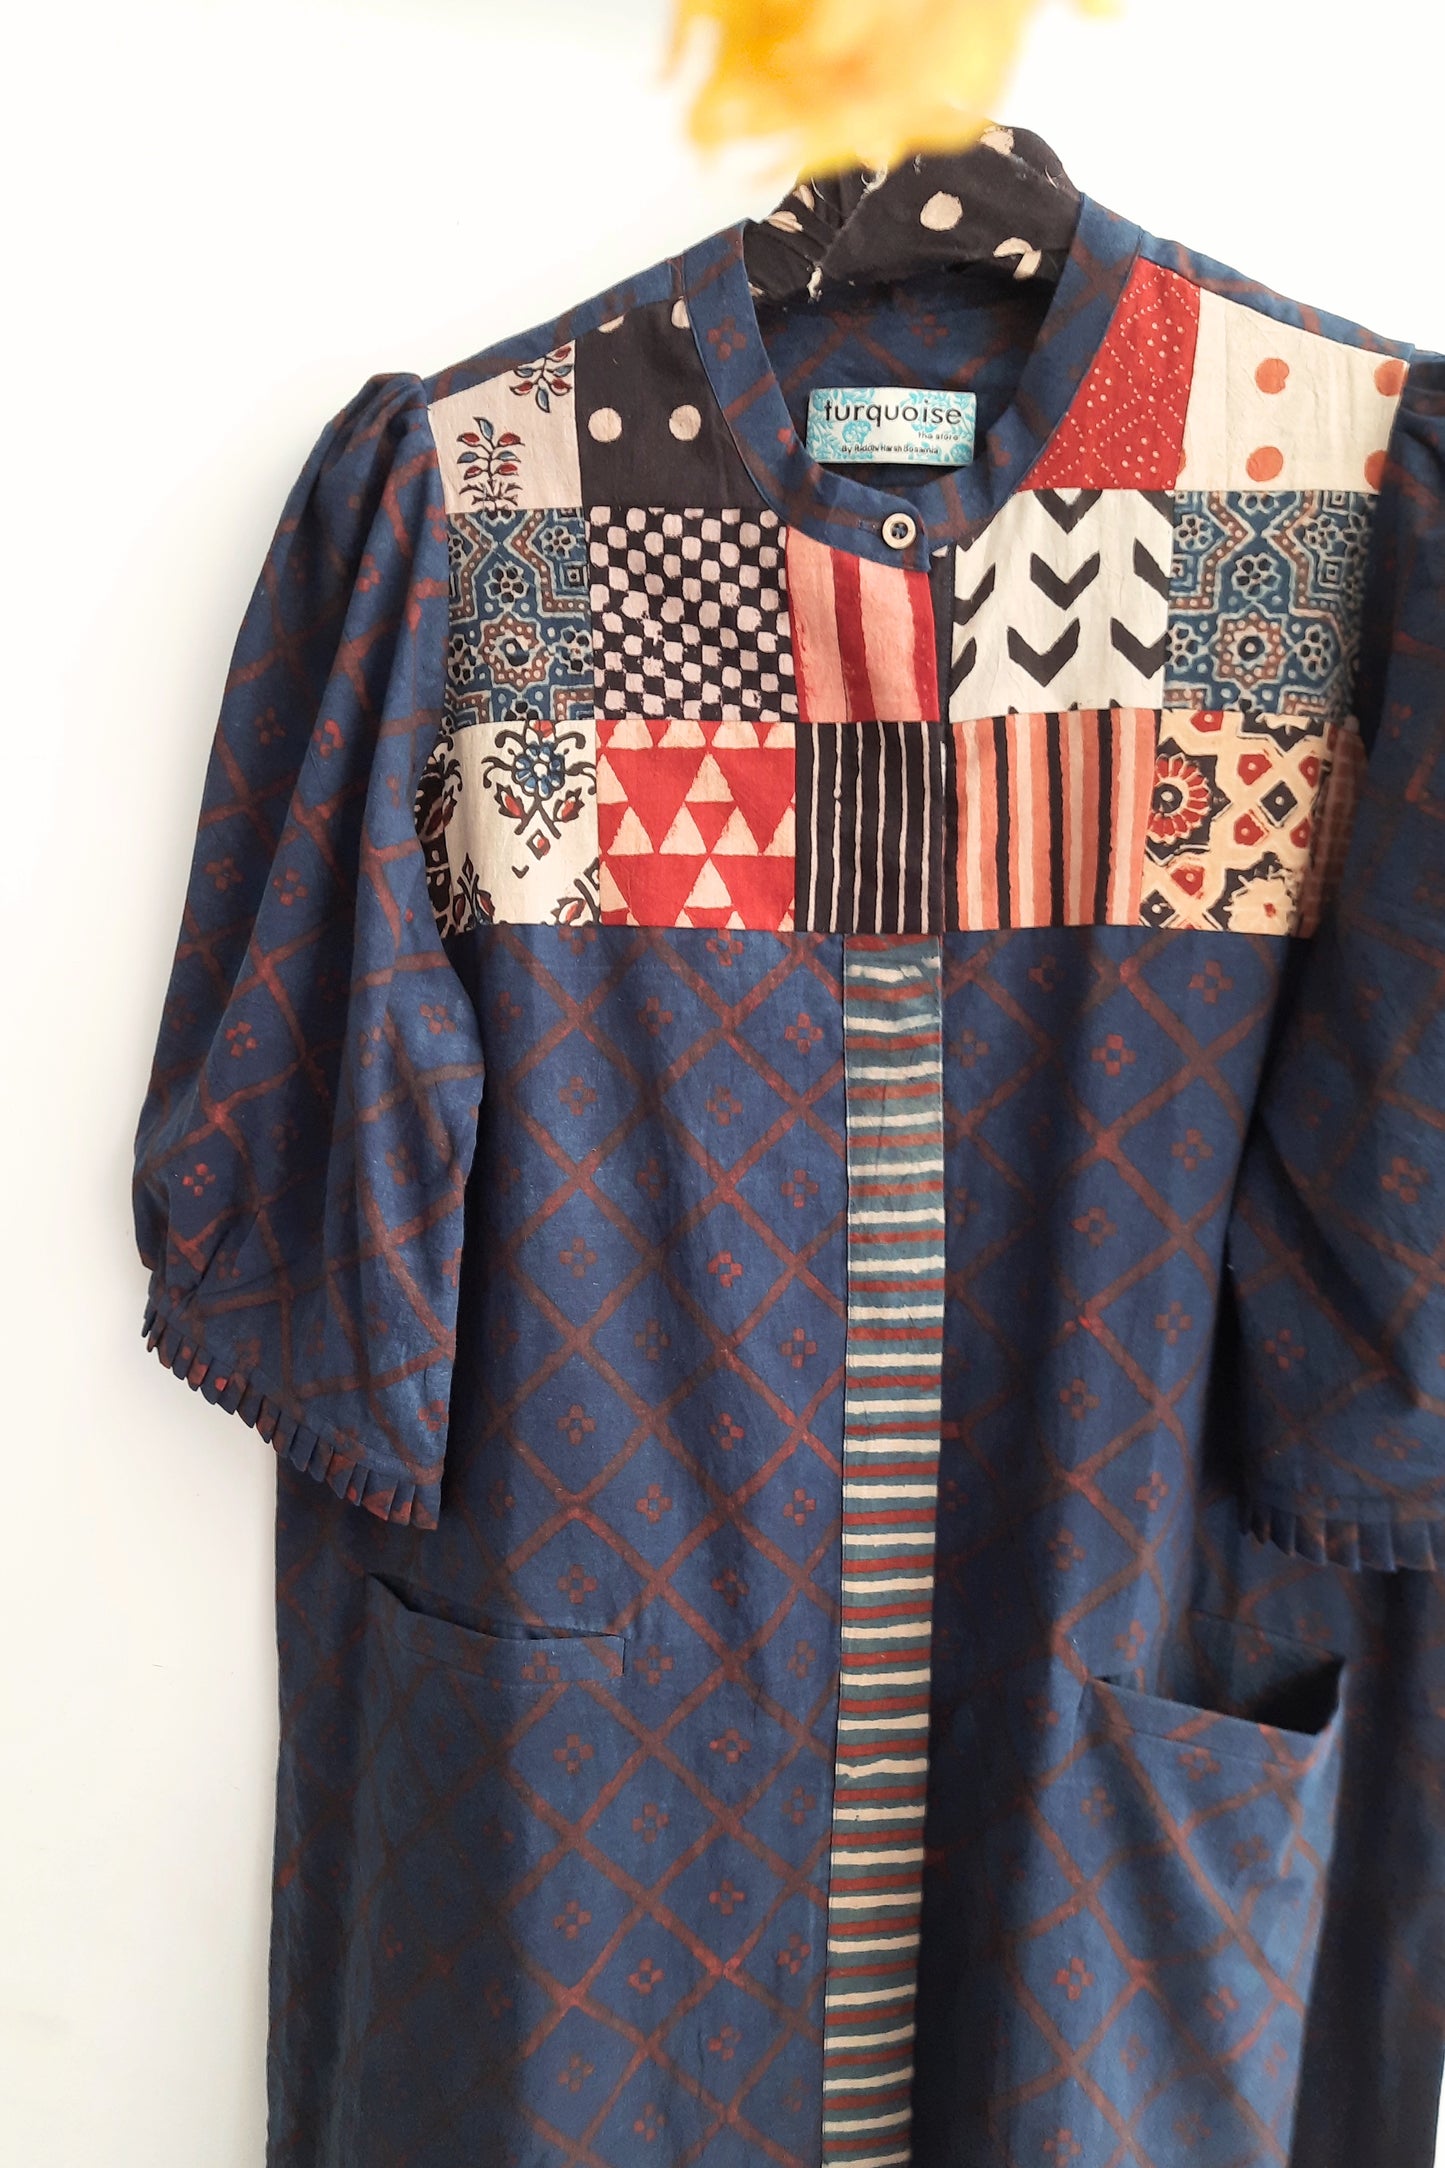 Indigo patchwork ajrakh women's kurta, Indigo dyed kurta, Slow fashion